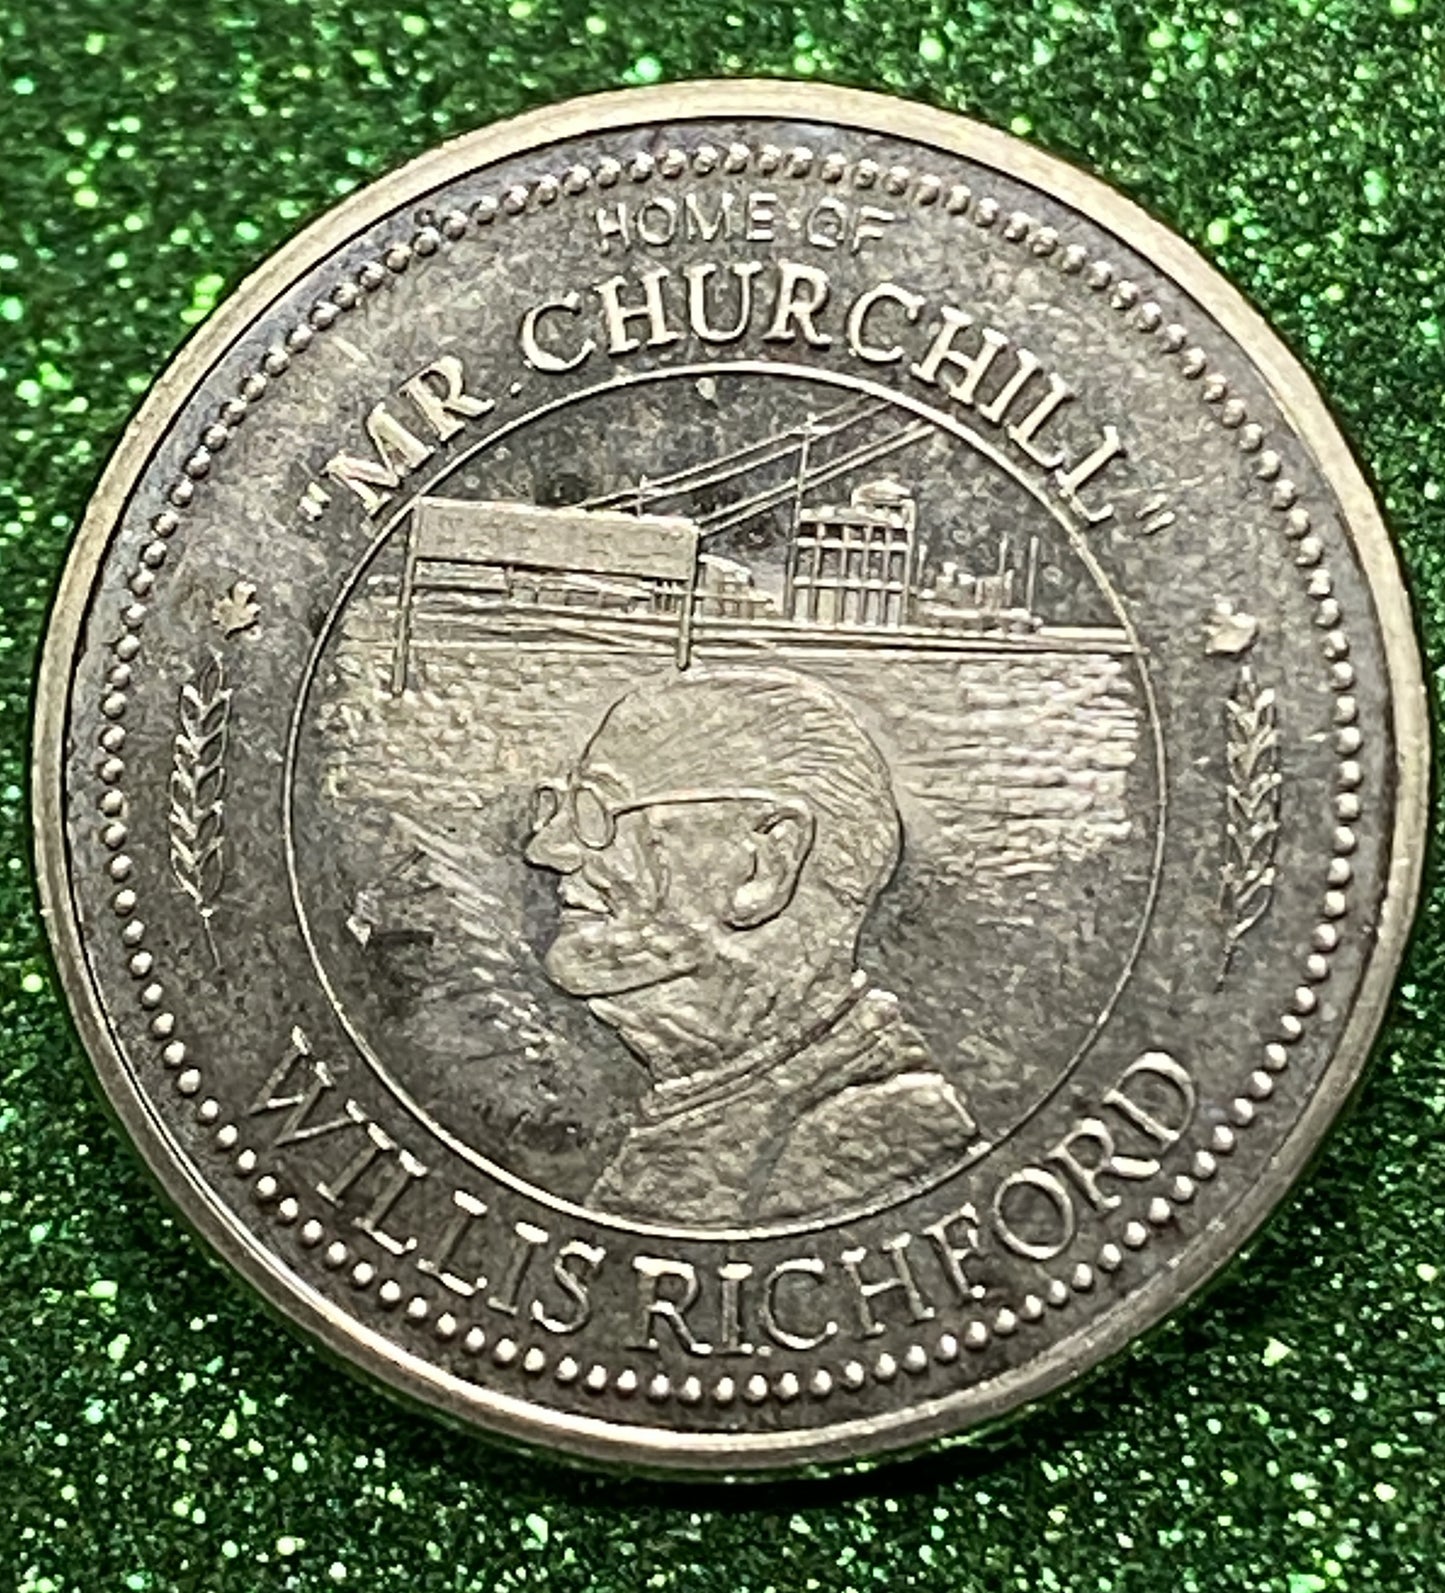 NORQUAY SASKATCHEWAN TOKEN SOUVENIR  CANADIAN COIN VF/UNC 2000